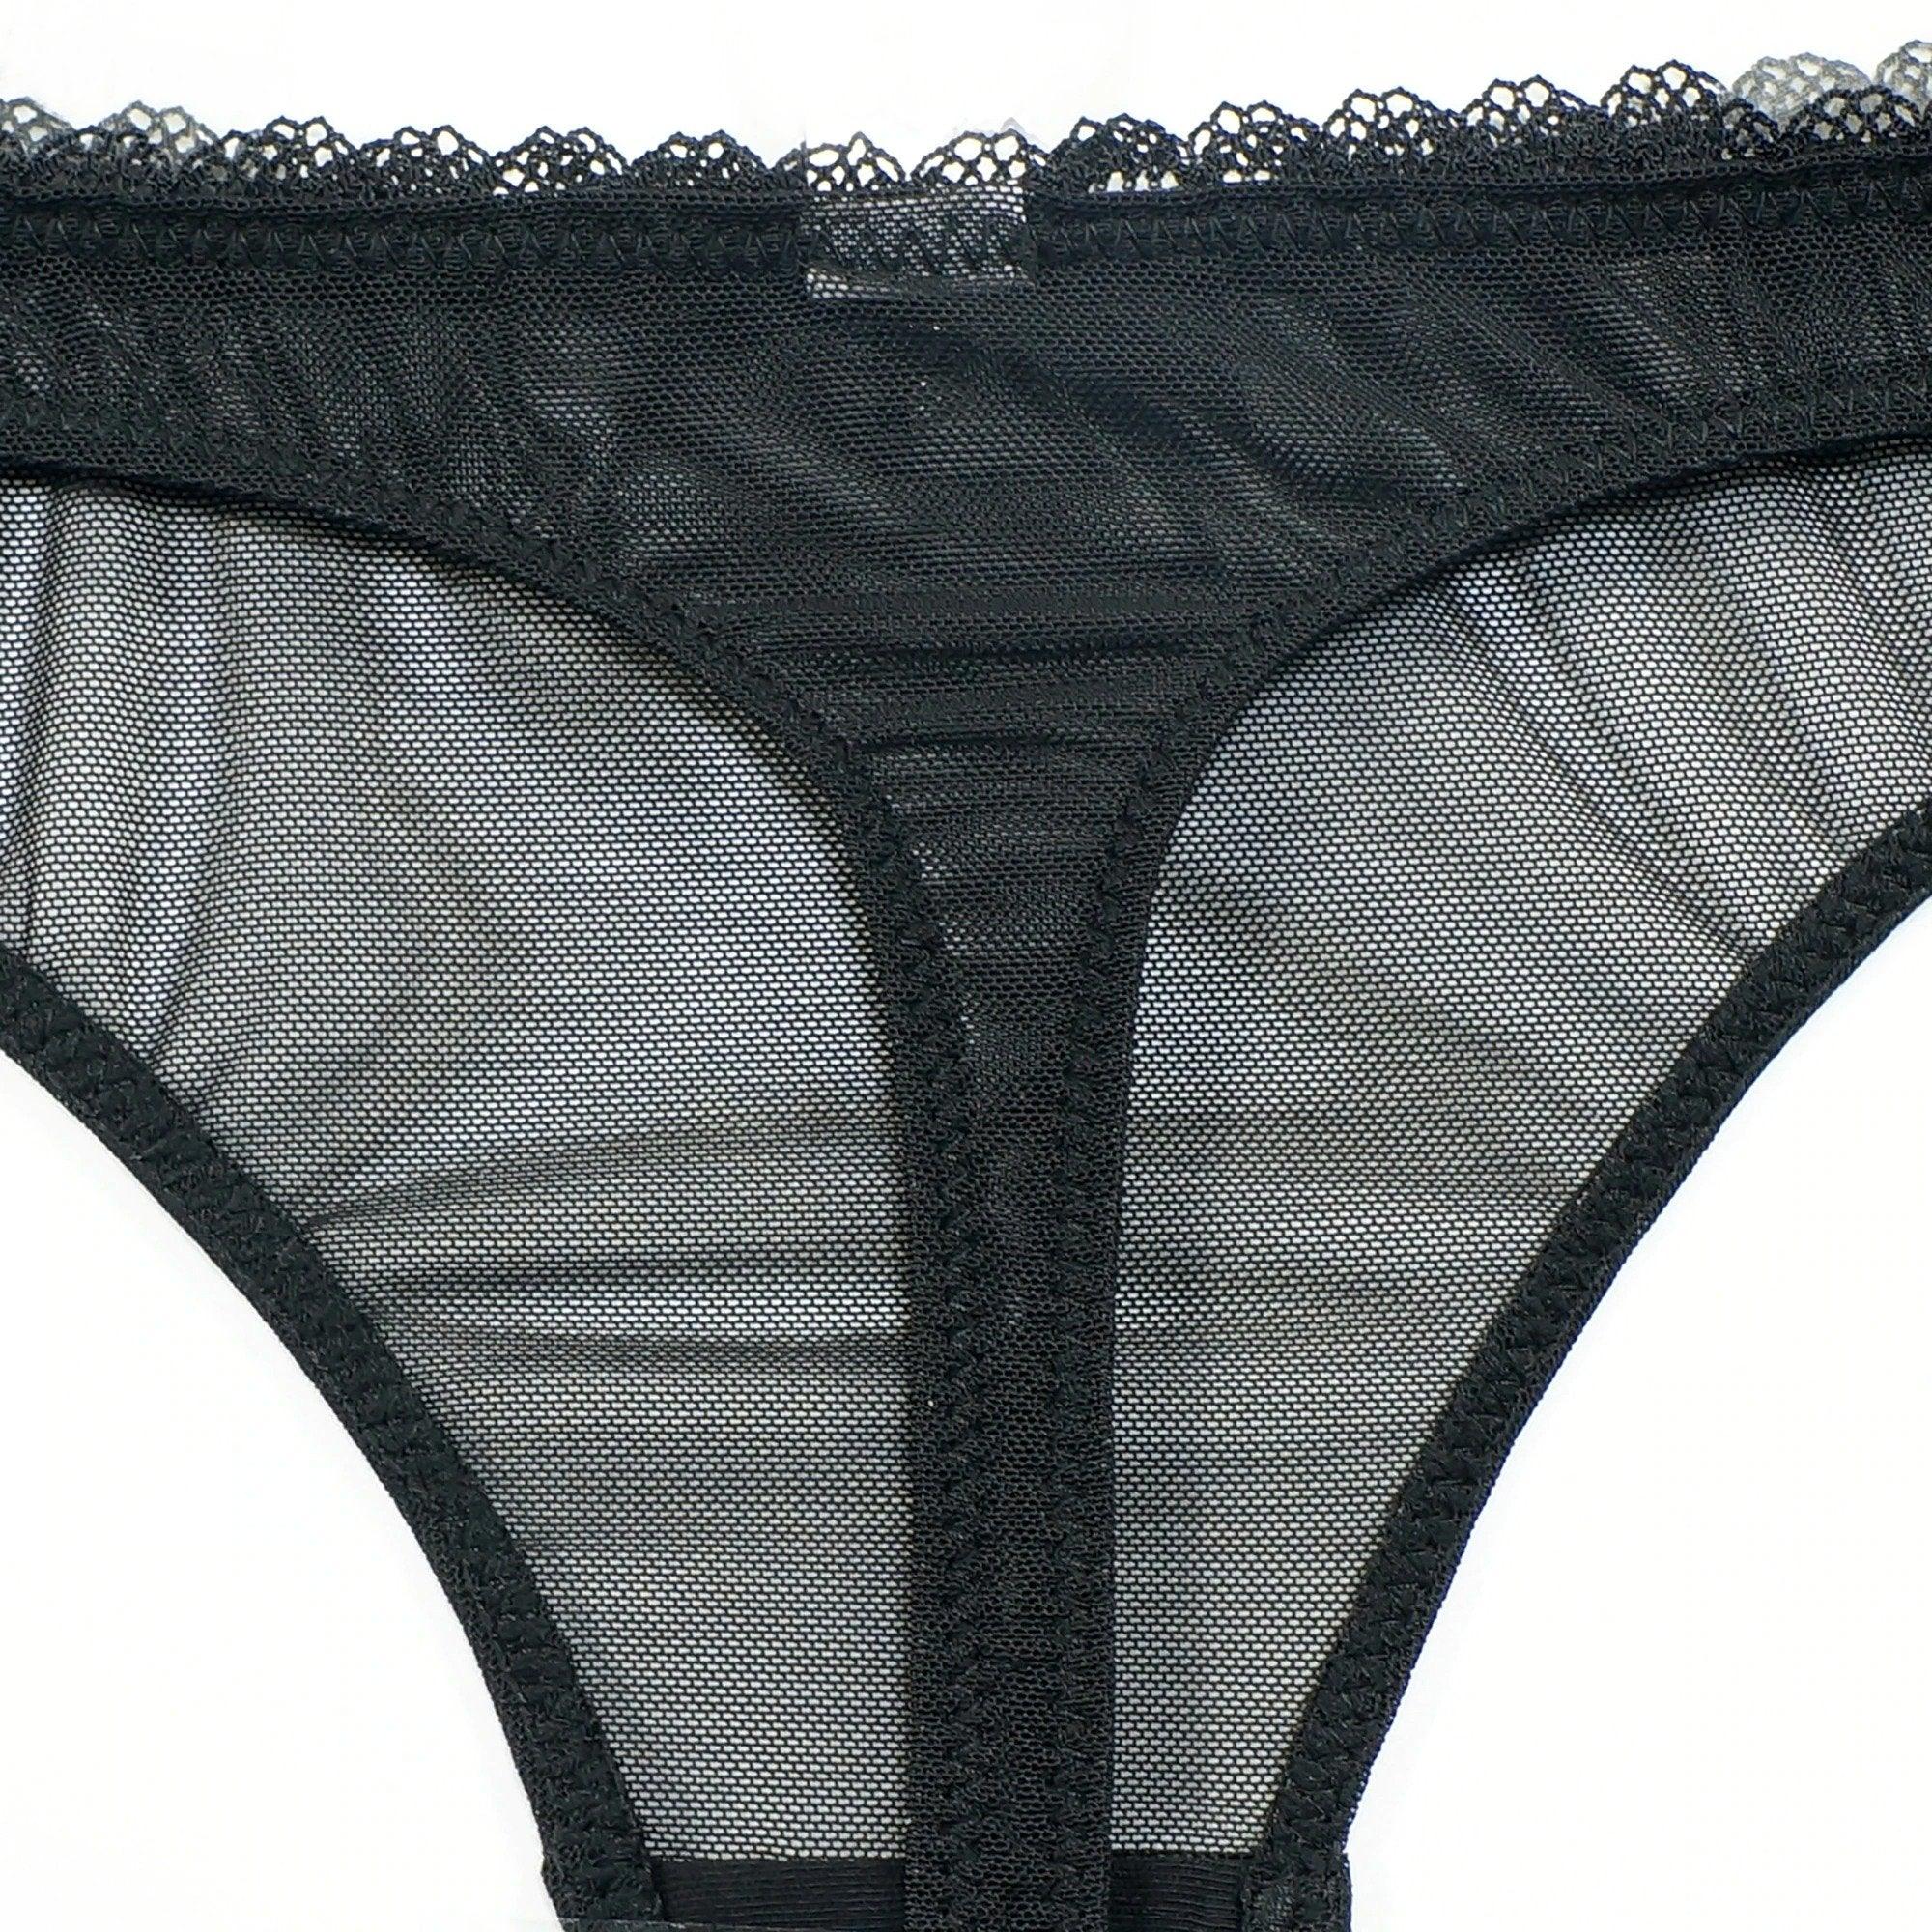 Ultra Thin Transparent Bras And Sheer Panties